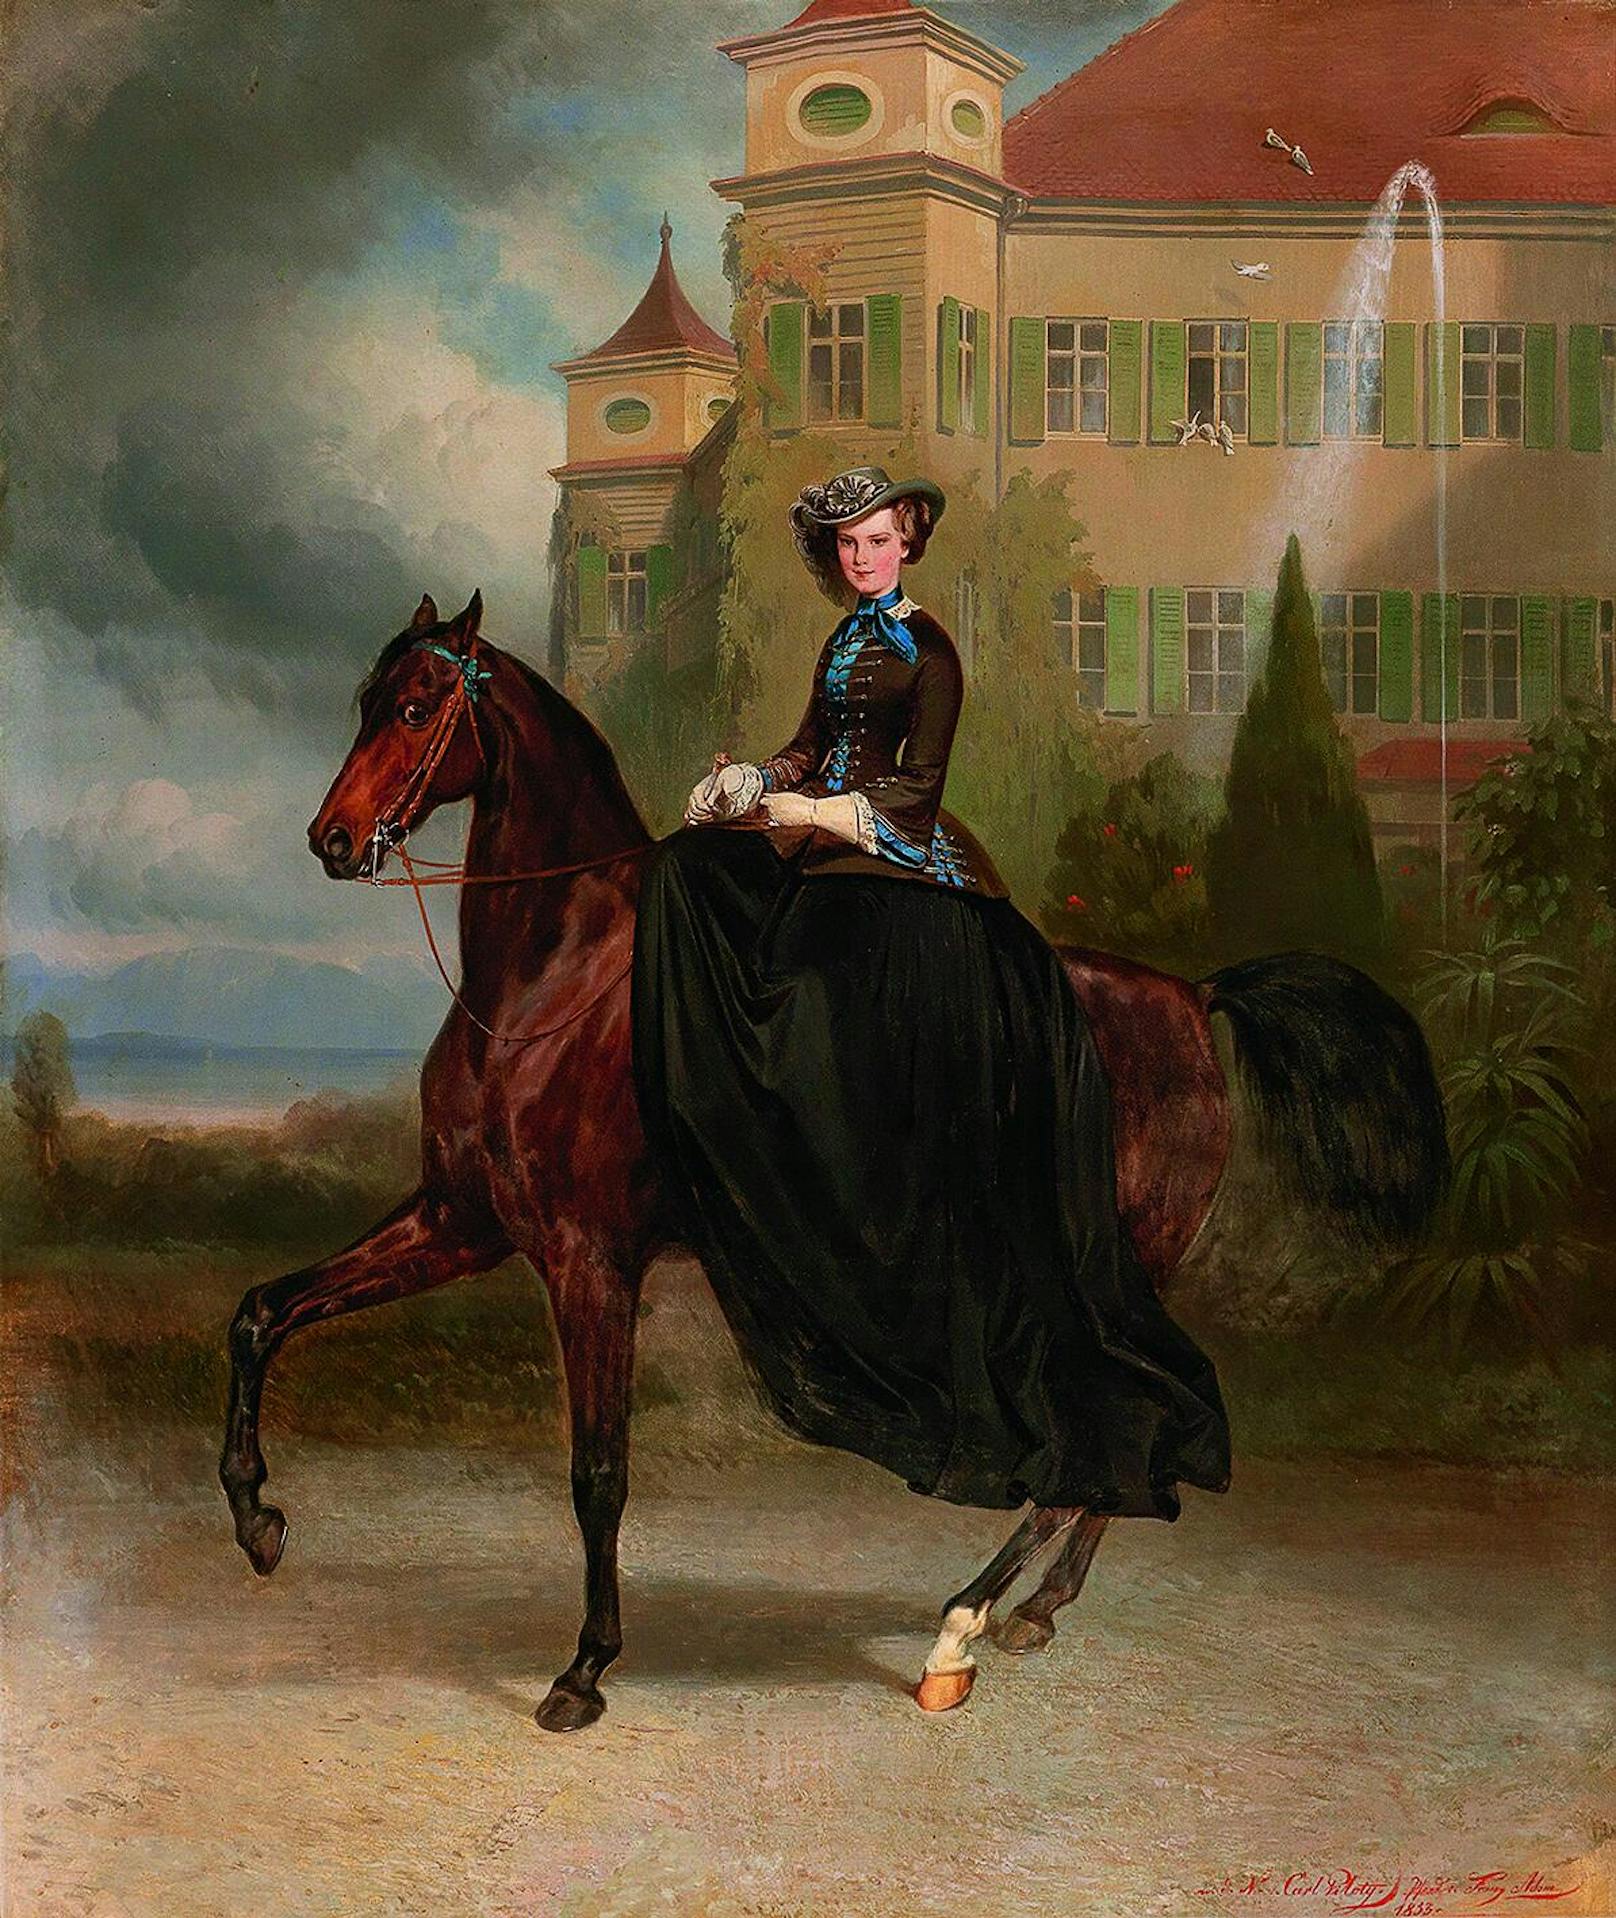 Kaiserin Elisabeth von Österreich als Braut zu Pferd in Possenhofen 1853
Sisi war 15 als das Bild gemalt wurde. Sie schenkte es ihrem Franz Joseph zu Weihnachten. Innerhalb der Familie Habsburg wurde das Bild als "Verlobungsbild" bezeichnet.